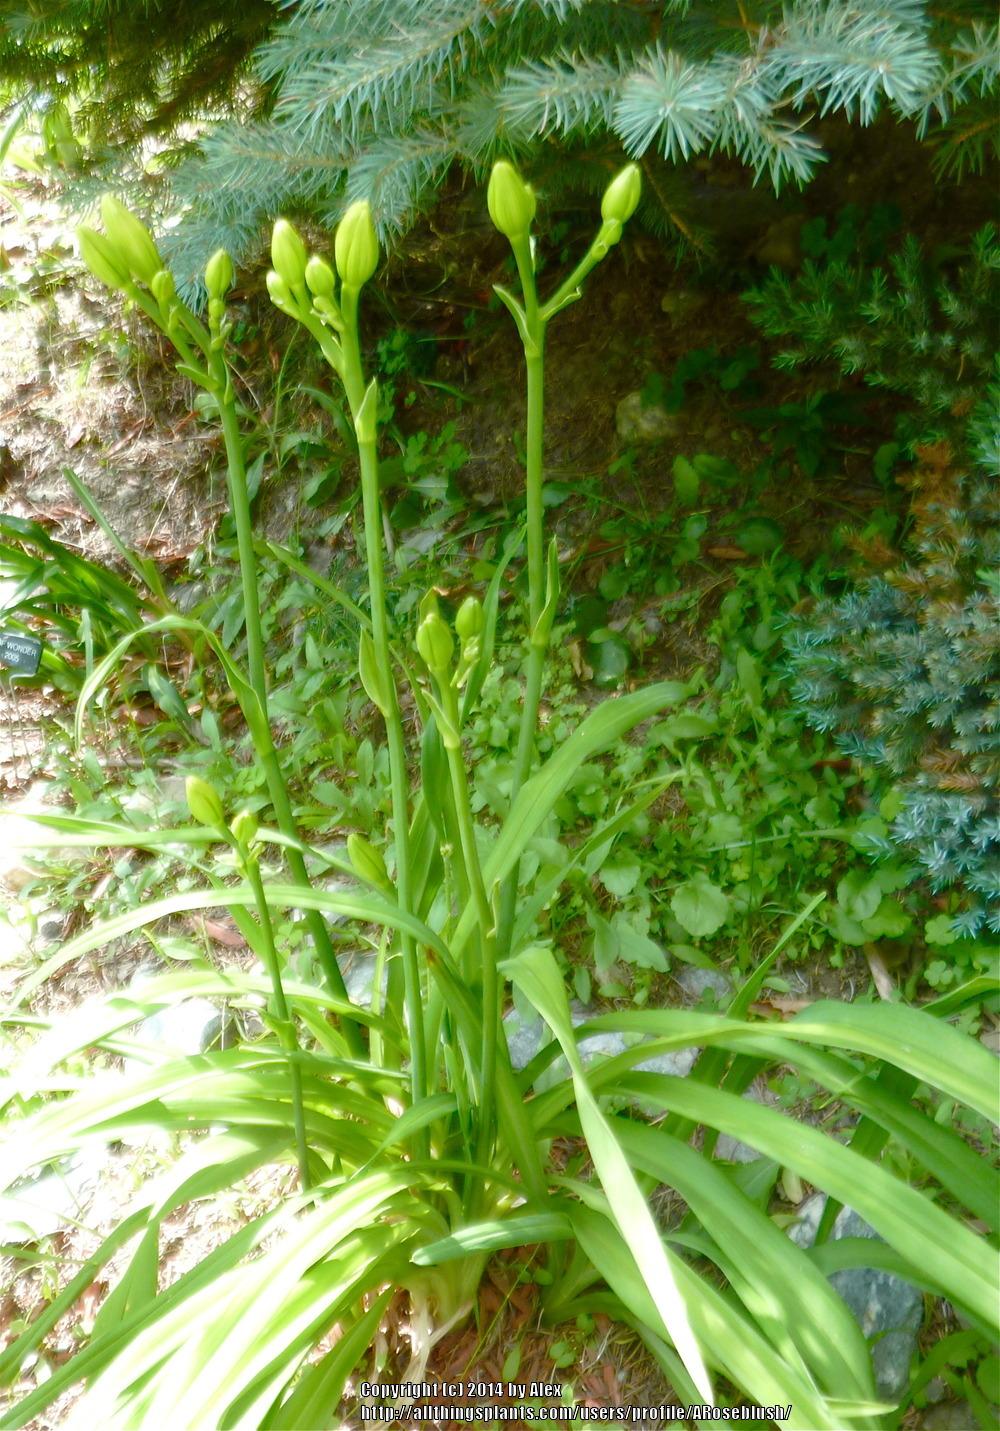 Photo of Daylily (Hemerocallis 'Jolyene Nichole') uploaded by ARoseblush